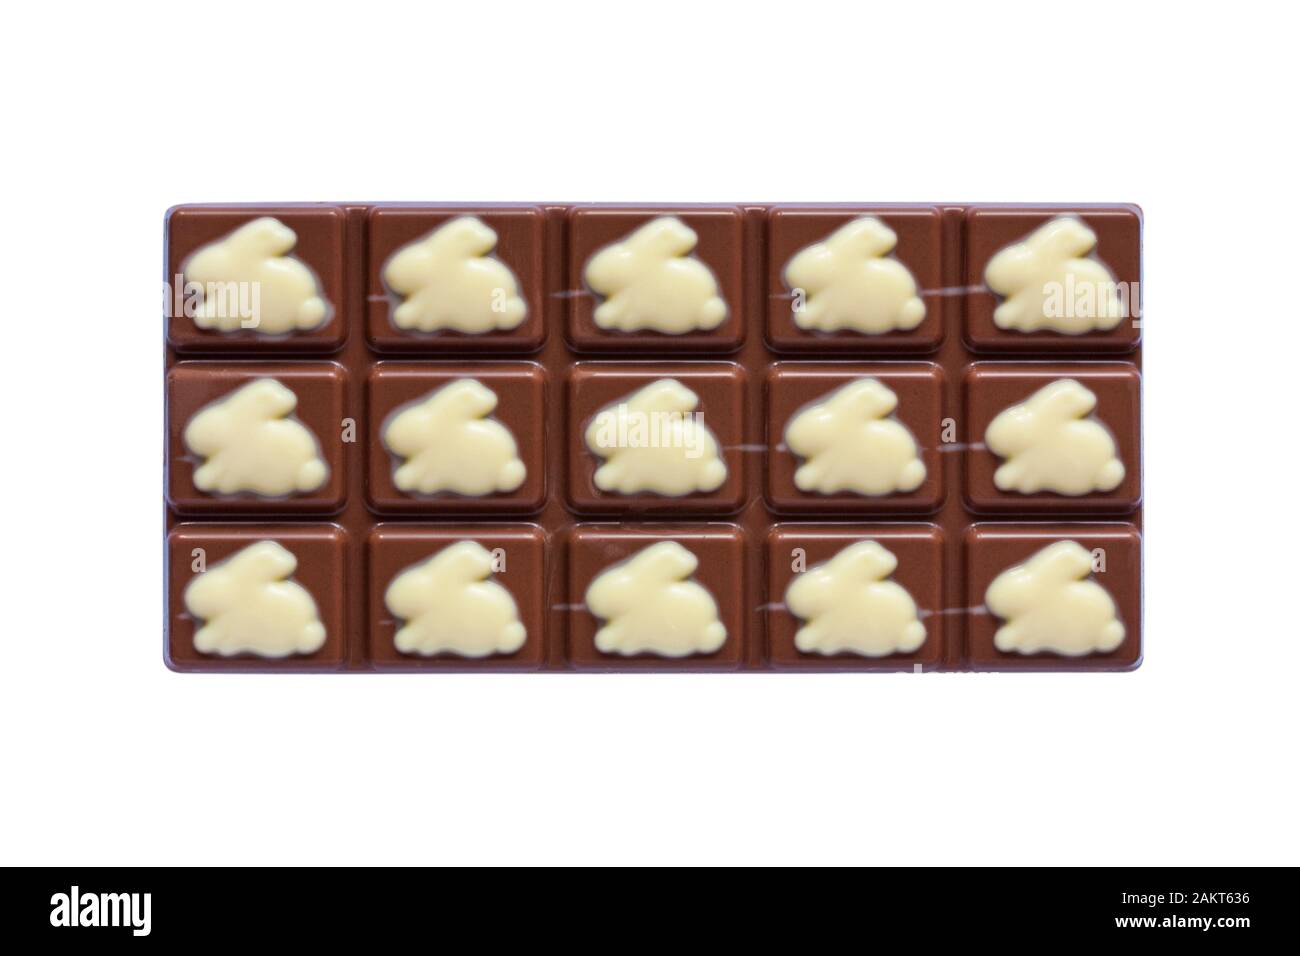 Cadbury Dairy Milk Spring Edition barra di cioccolato rimossa dall'involucro isolata su sfondo bianco - cioccolato al latte con cioccolato bianco Foto Stock